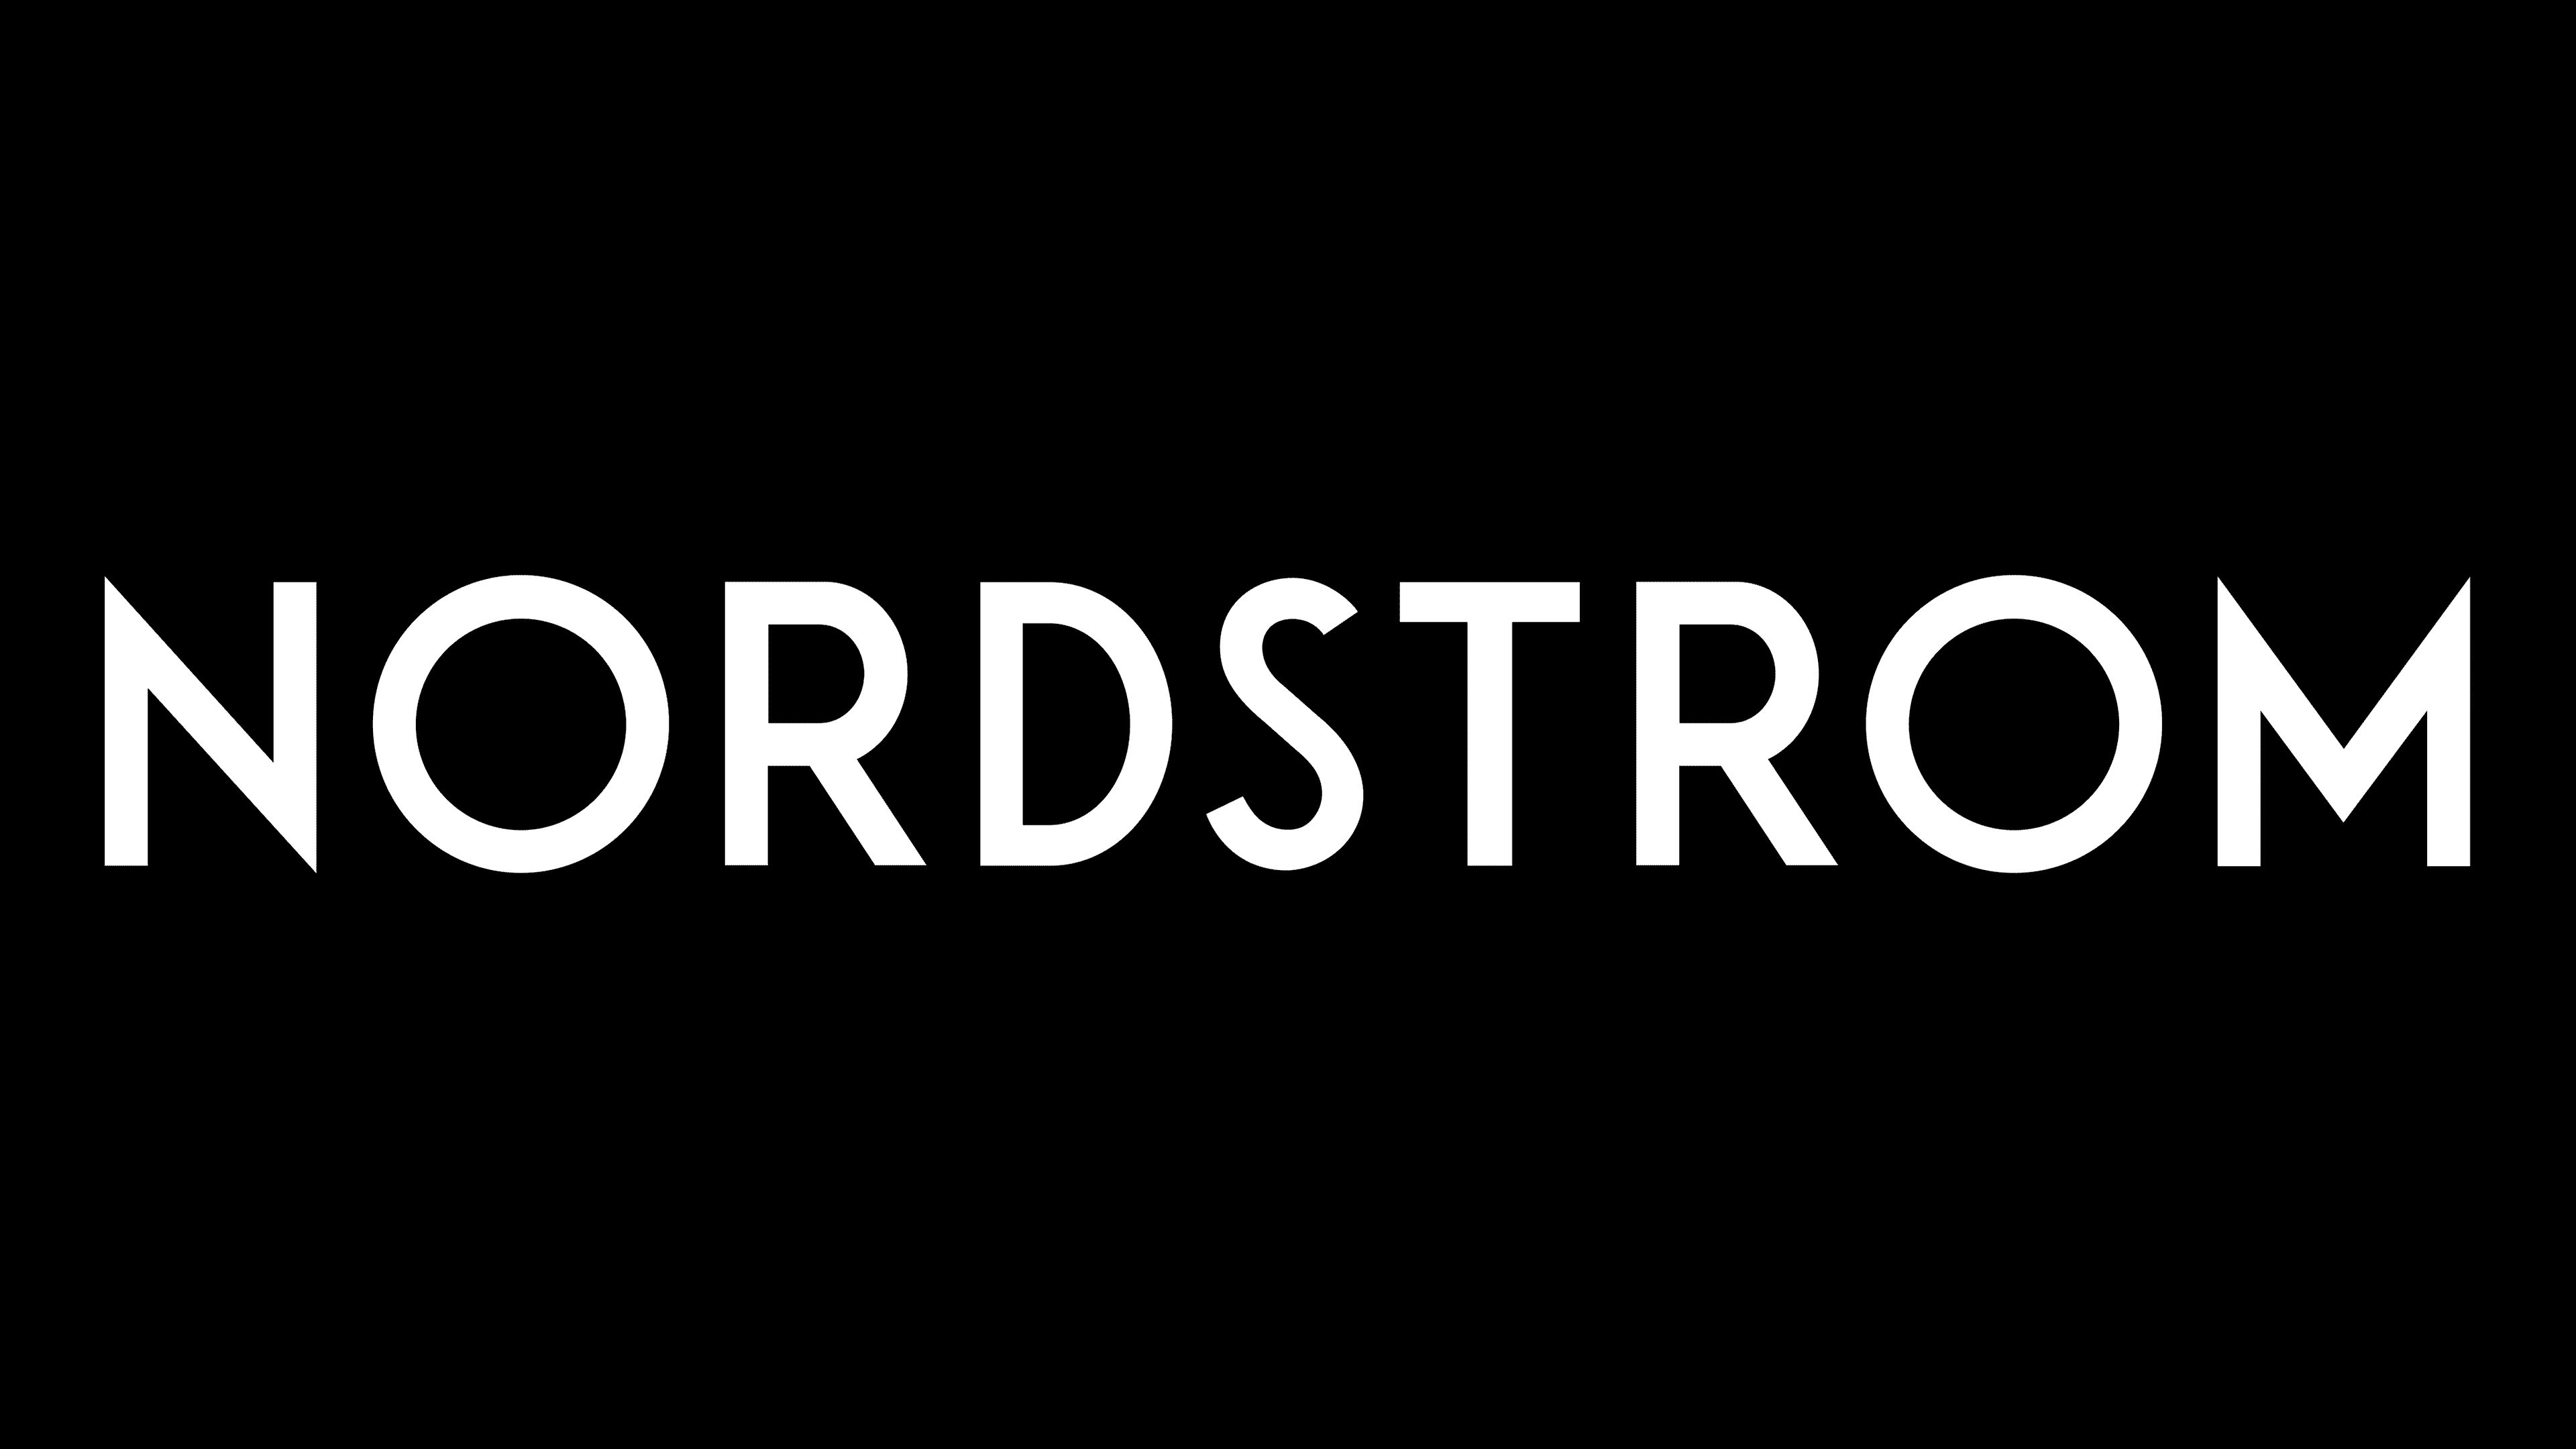 Nordstrom Logo Transparent